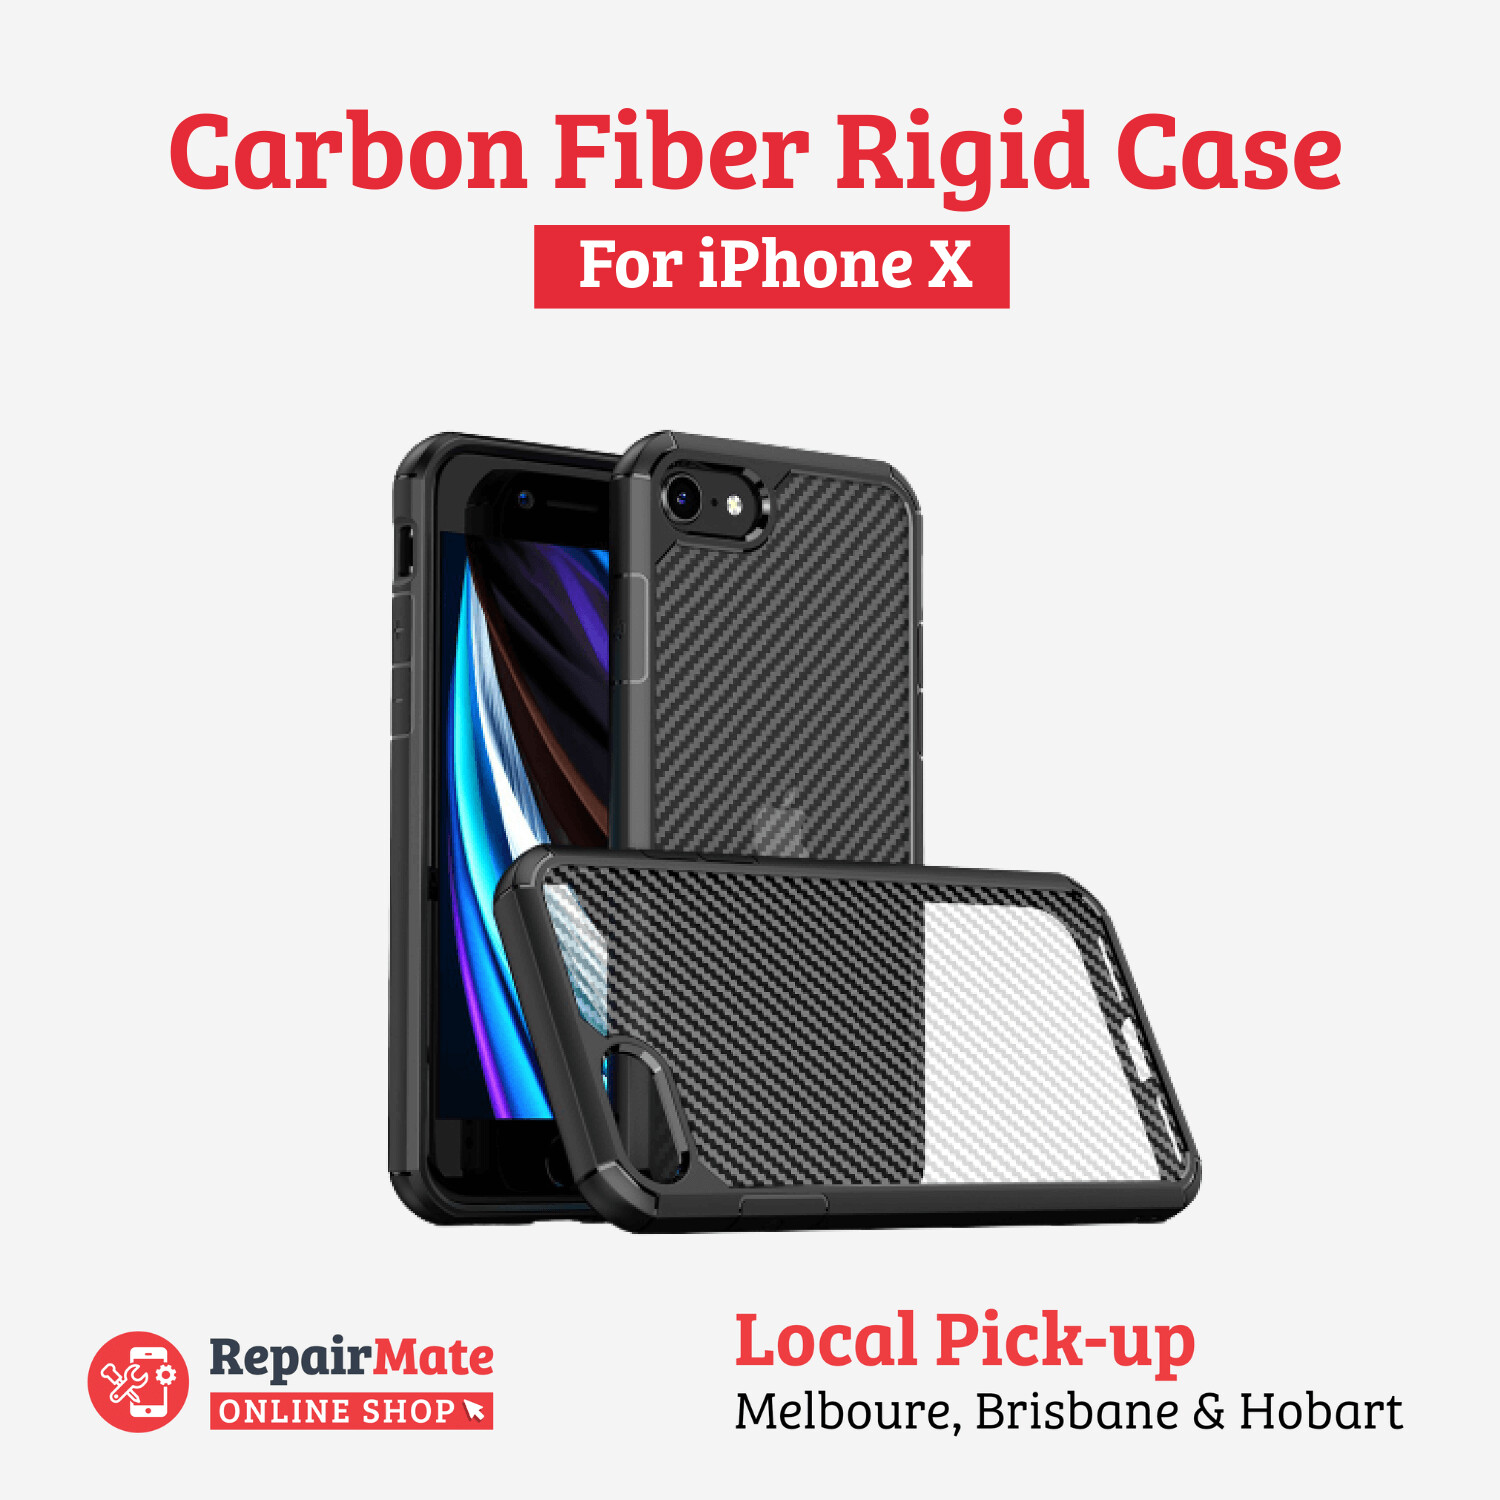 iPhone X Carbon Fiber Rigid Case Cover